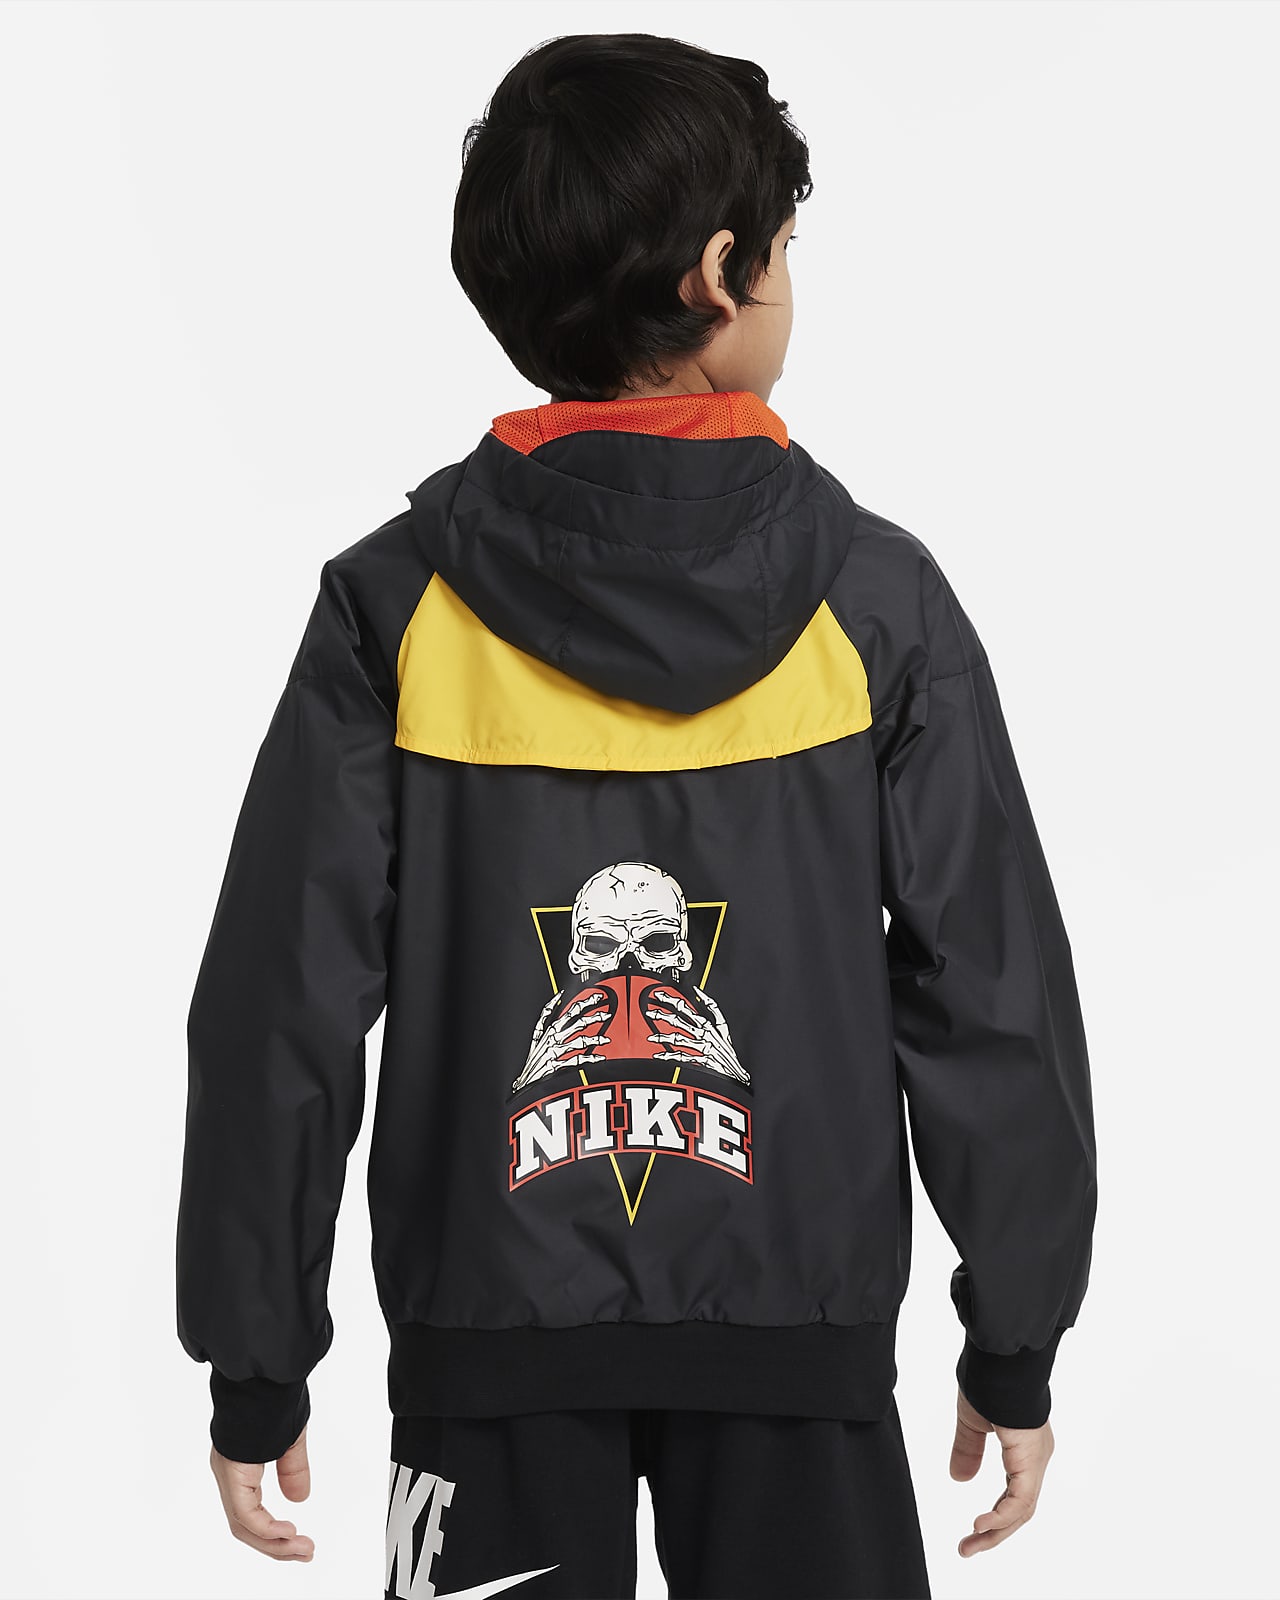 Veste à capuche Nike Sportswear Windrunner Jacket enfant (6-16 ans)